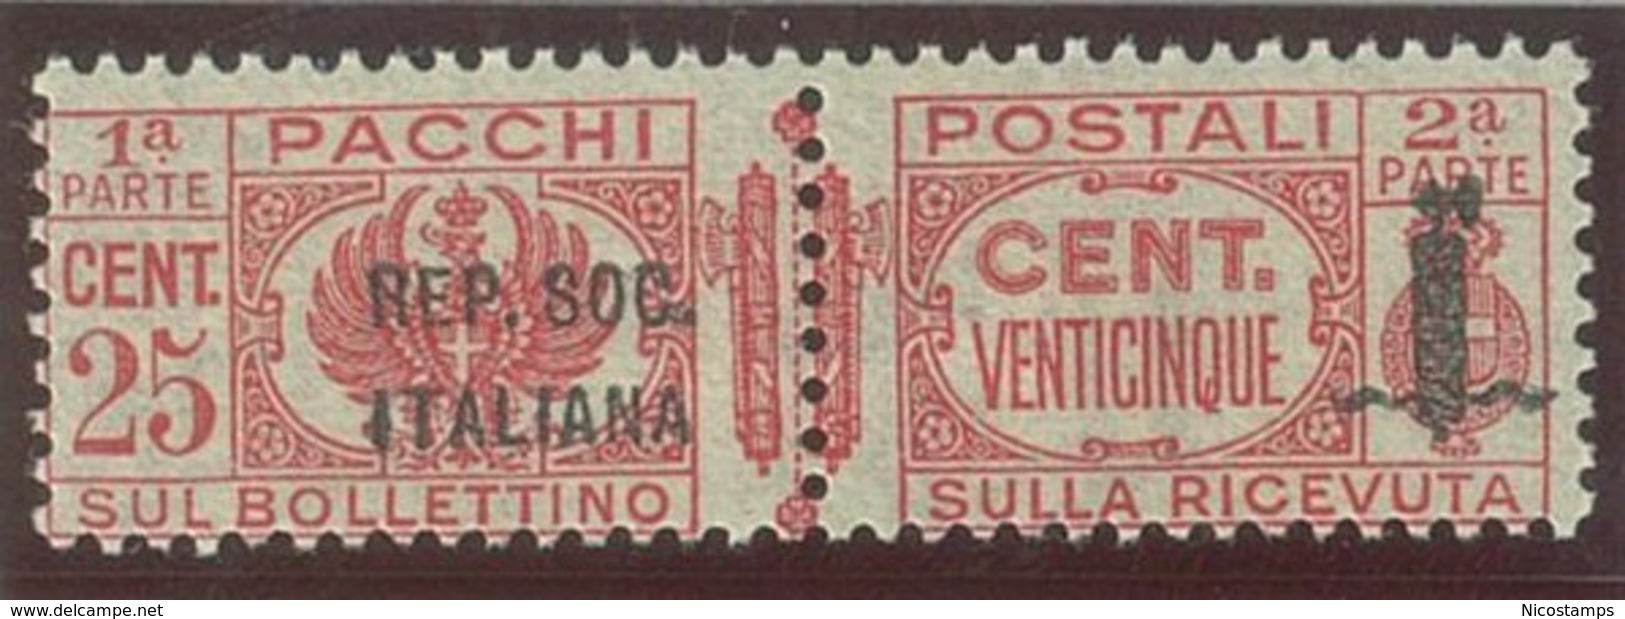 ITALIA REPUBBLICA SOCIALE ITALIANA (R.S.I.) SASS. P.P. 38a  NUOVO - Pacchi Postali